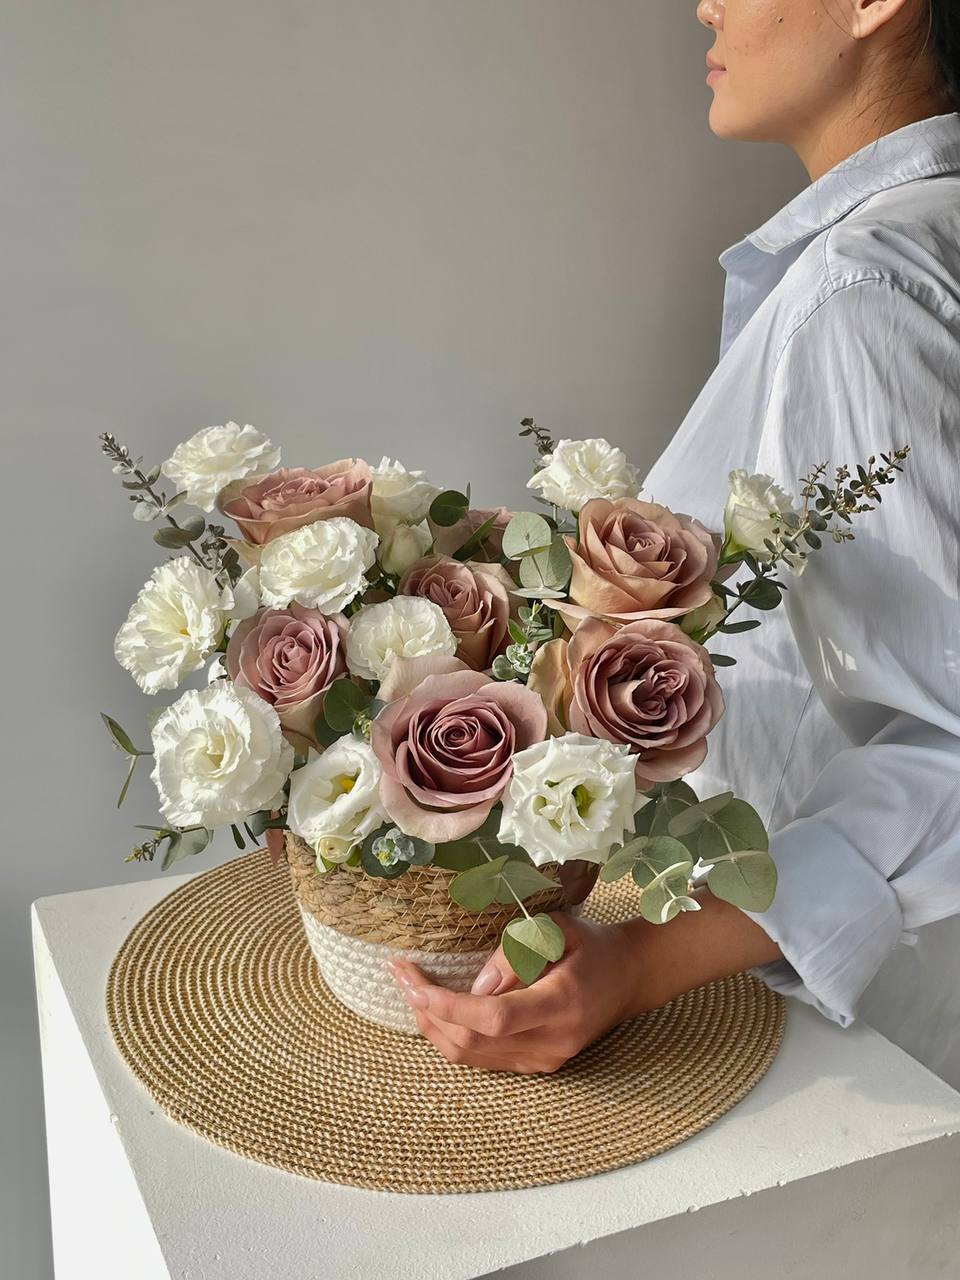 Композиция "Лион М" с розами и лизиантусом в кашпо